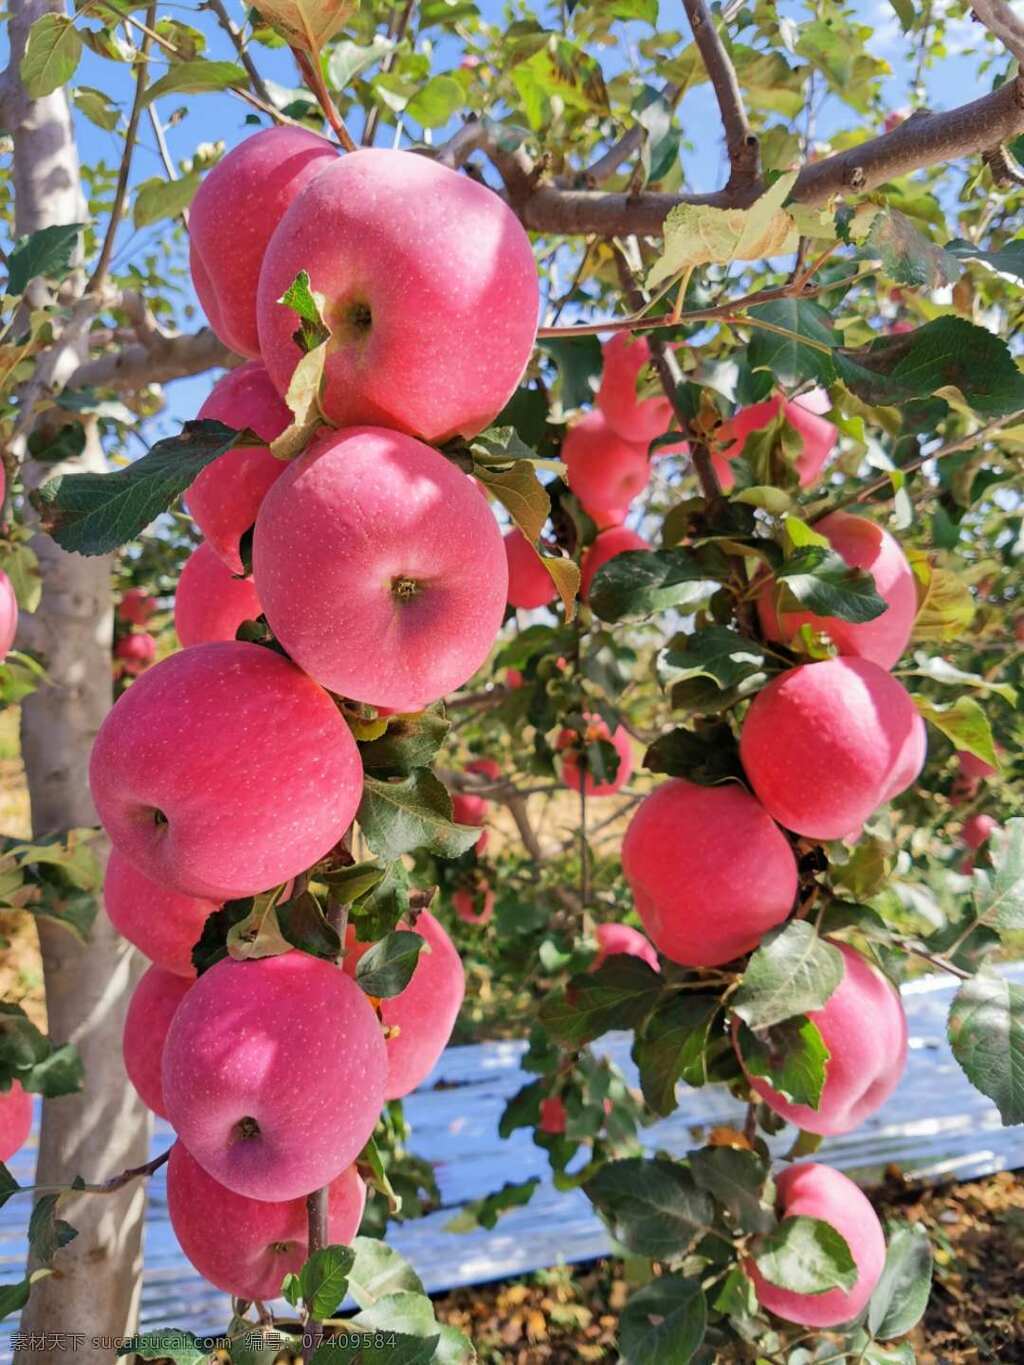 苹果图片 苹果 水果 陕北 果园 果树 苹果树 红苹果